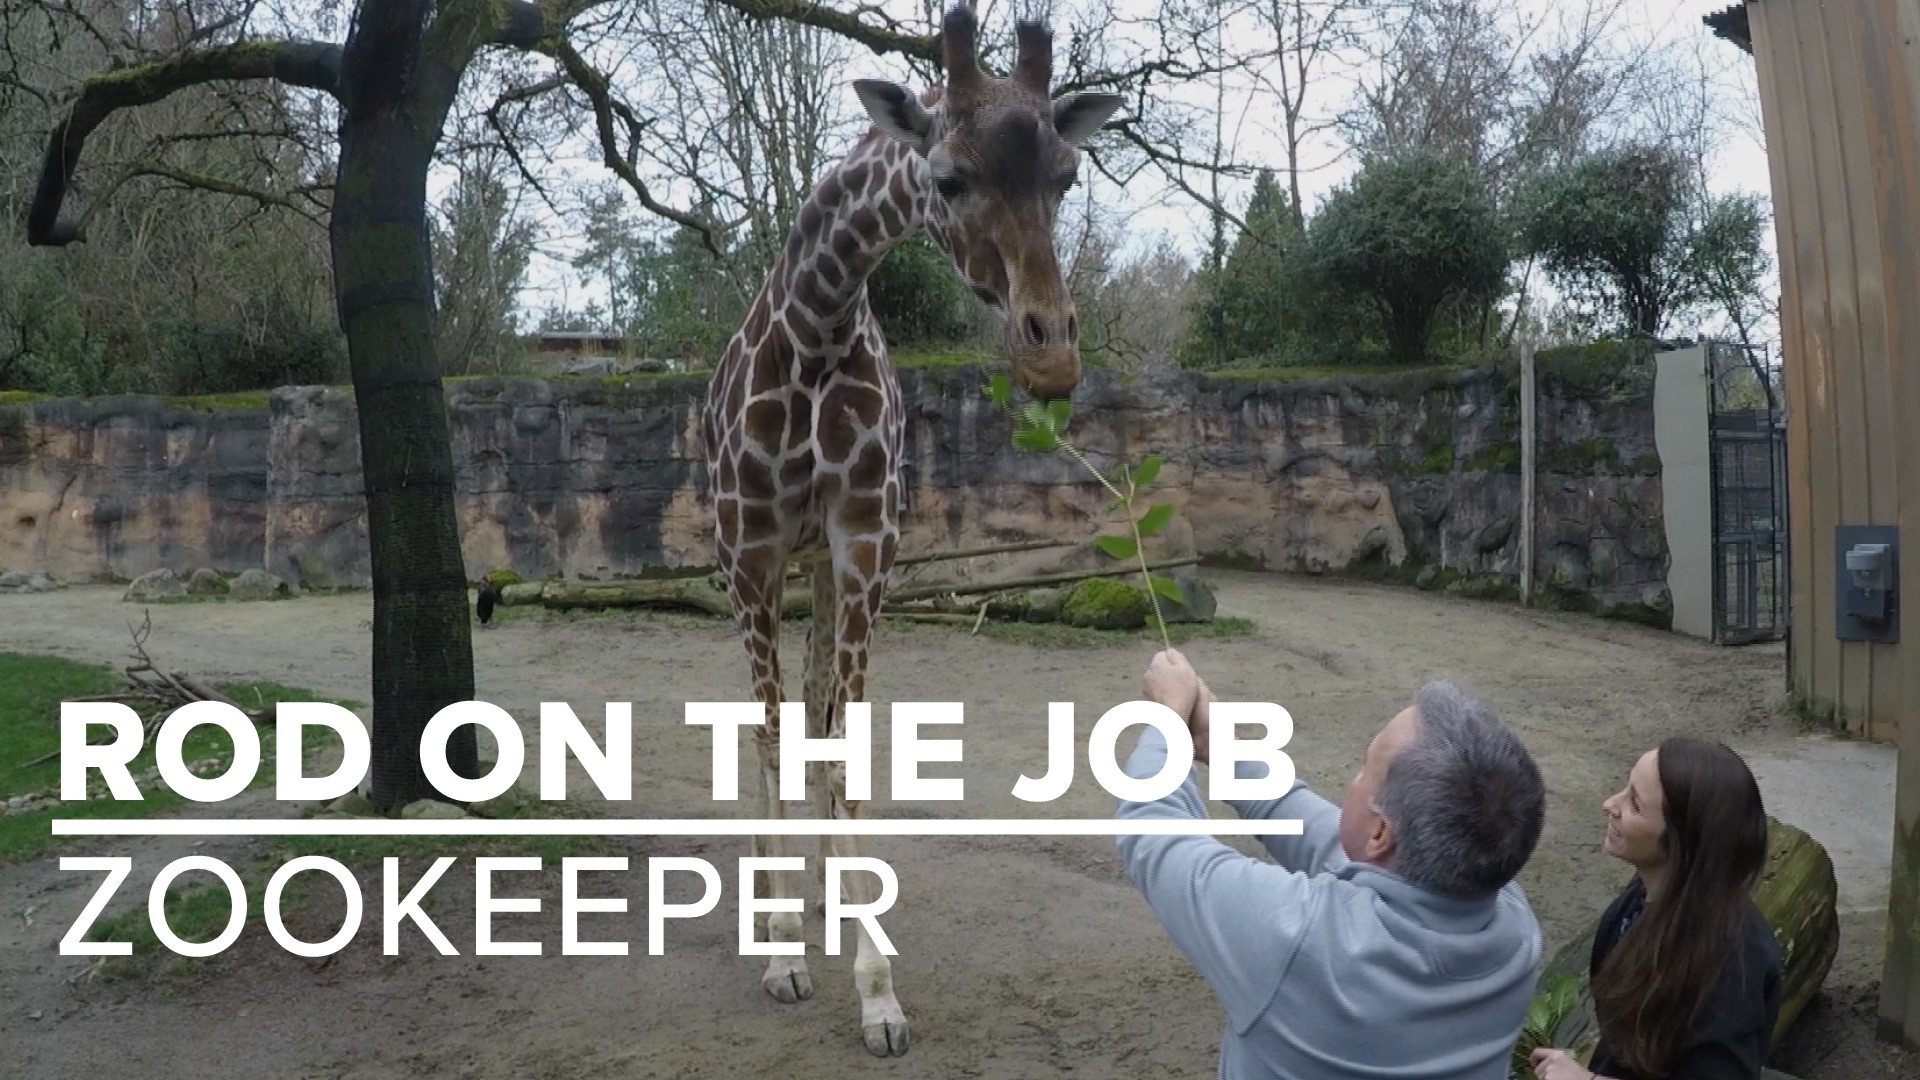 zookeeper job